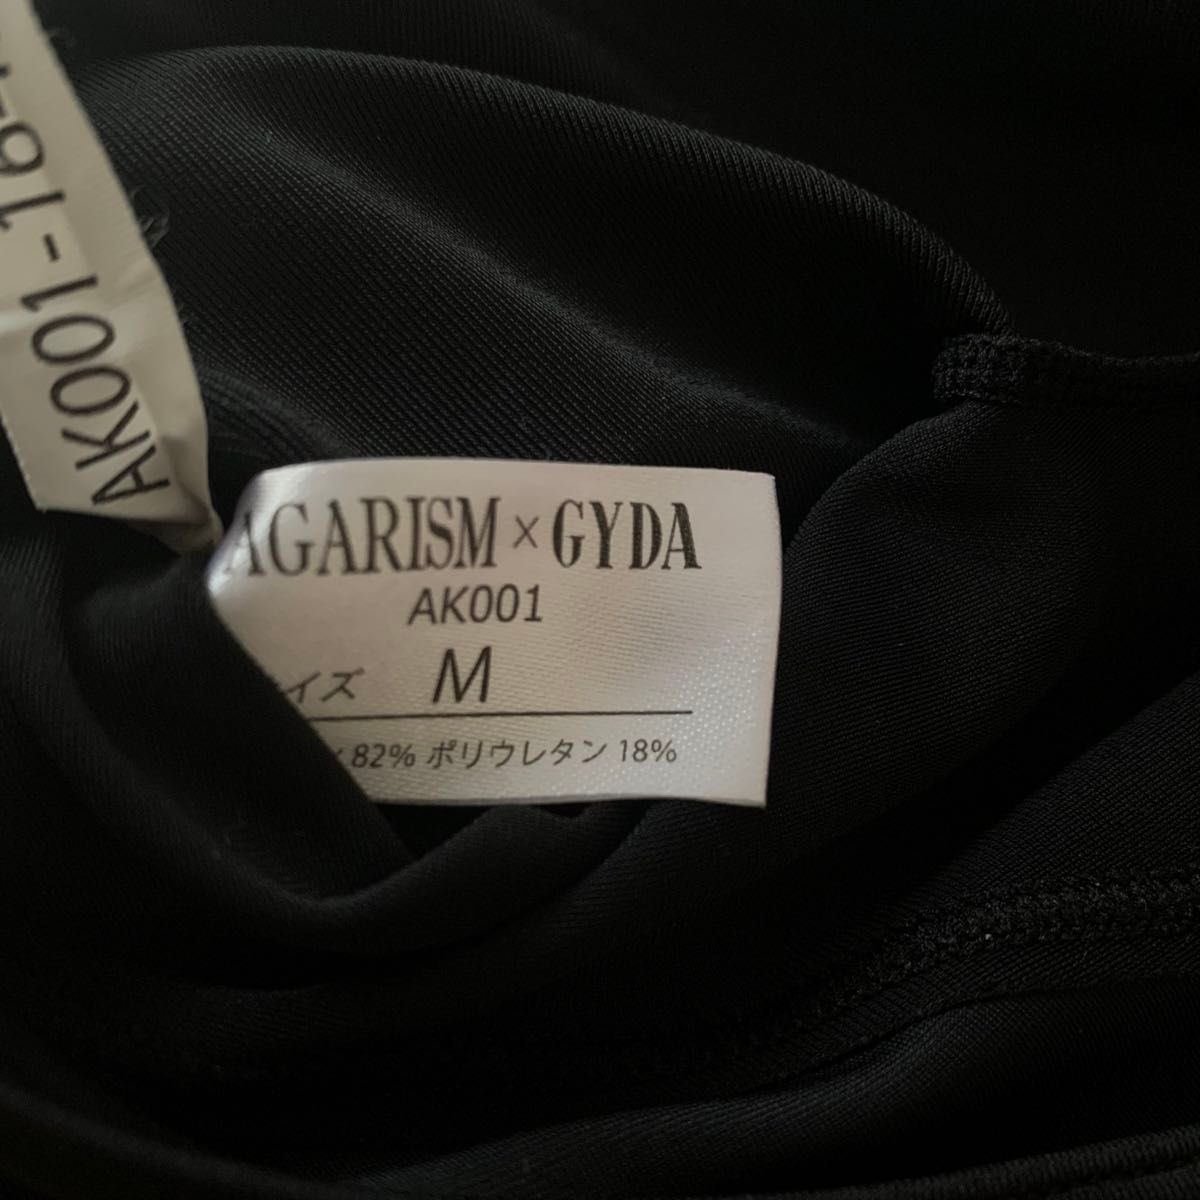 アップミースタイリングブラ  AGARISM × GYDA  Mサイズ  ブラック